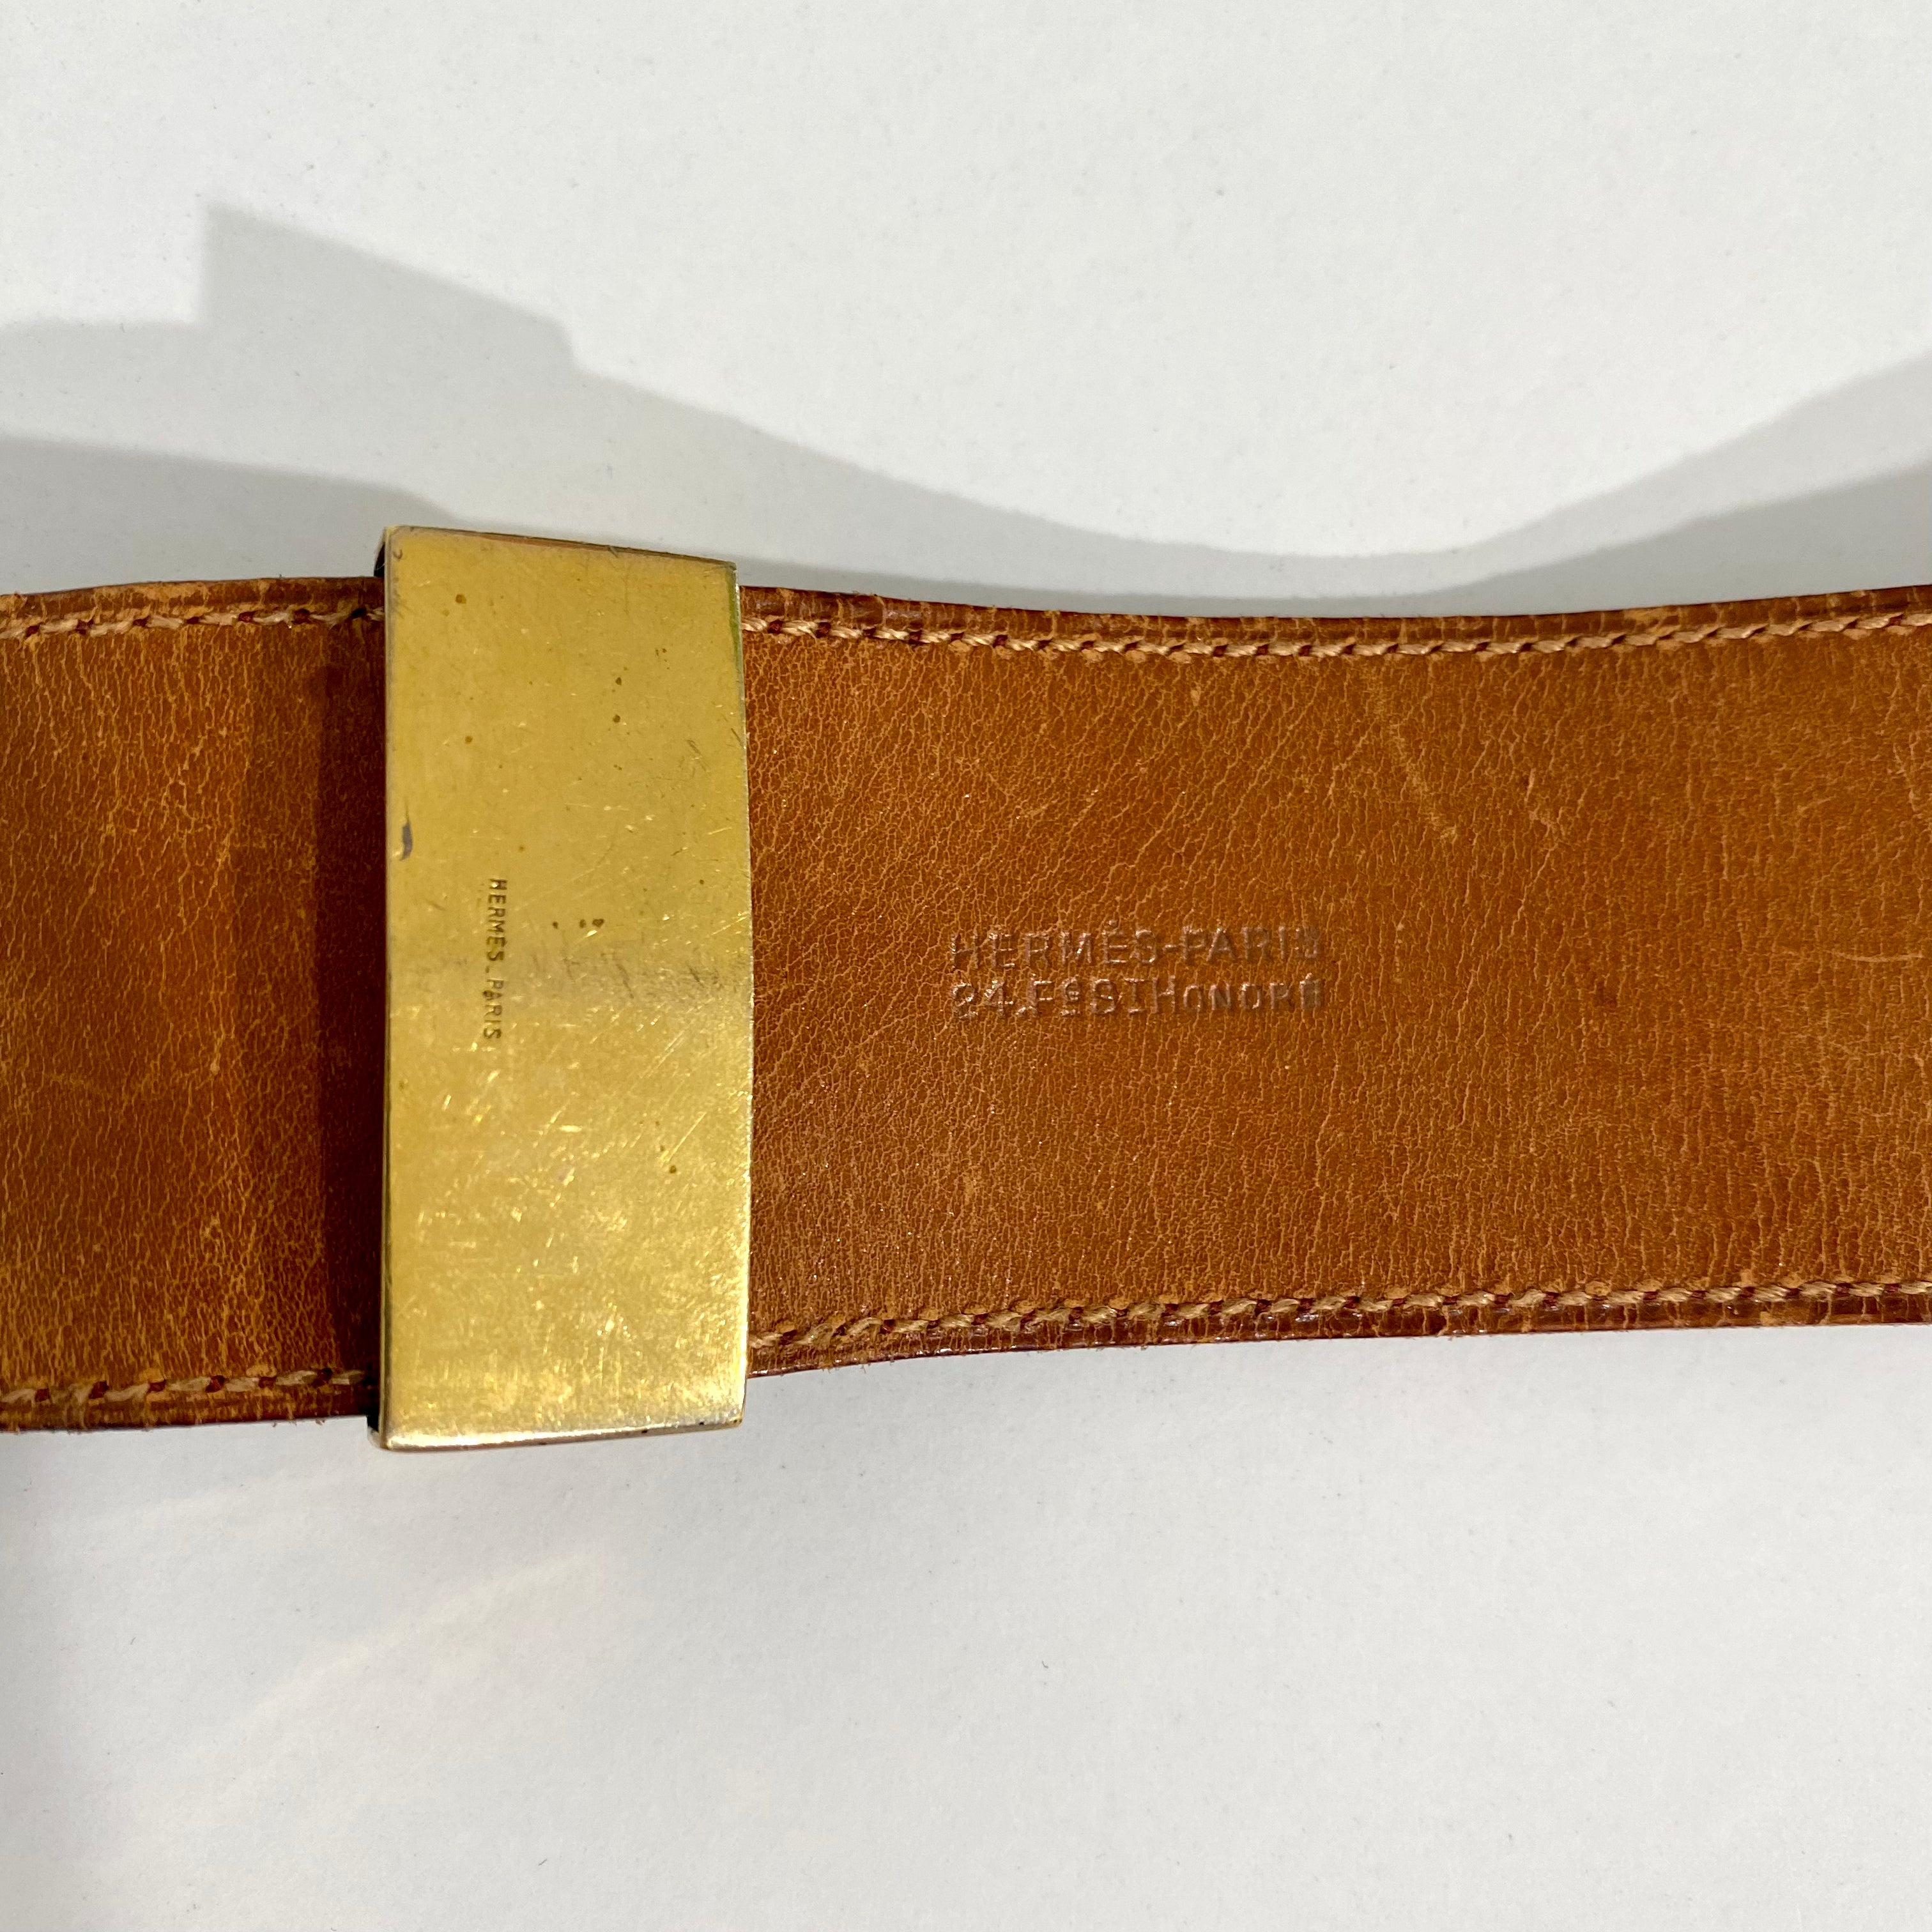 HERMÈS 1991 Collier de Chien CDC Médor Vintage Belt Red GHW W/Box